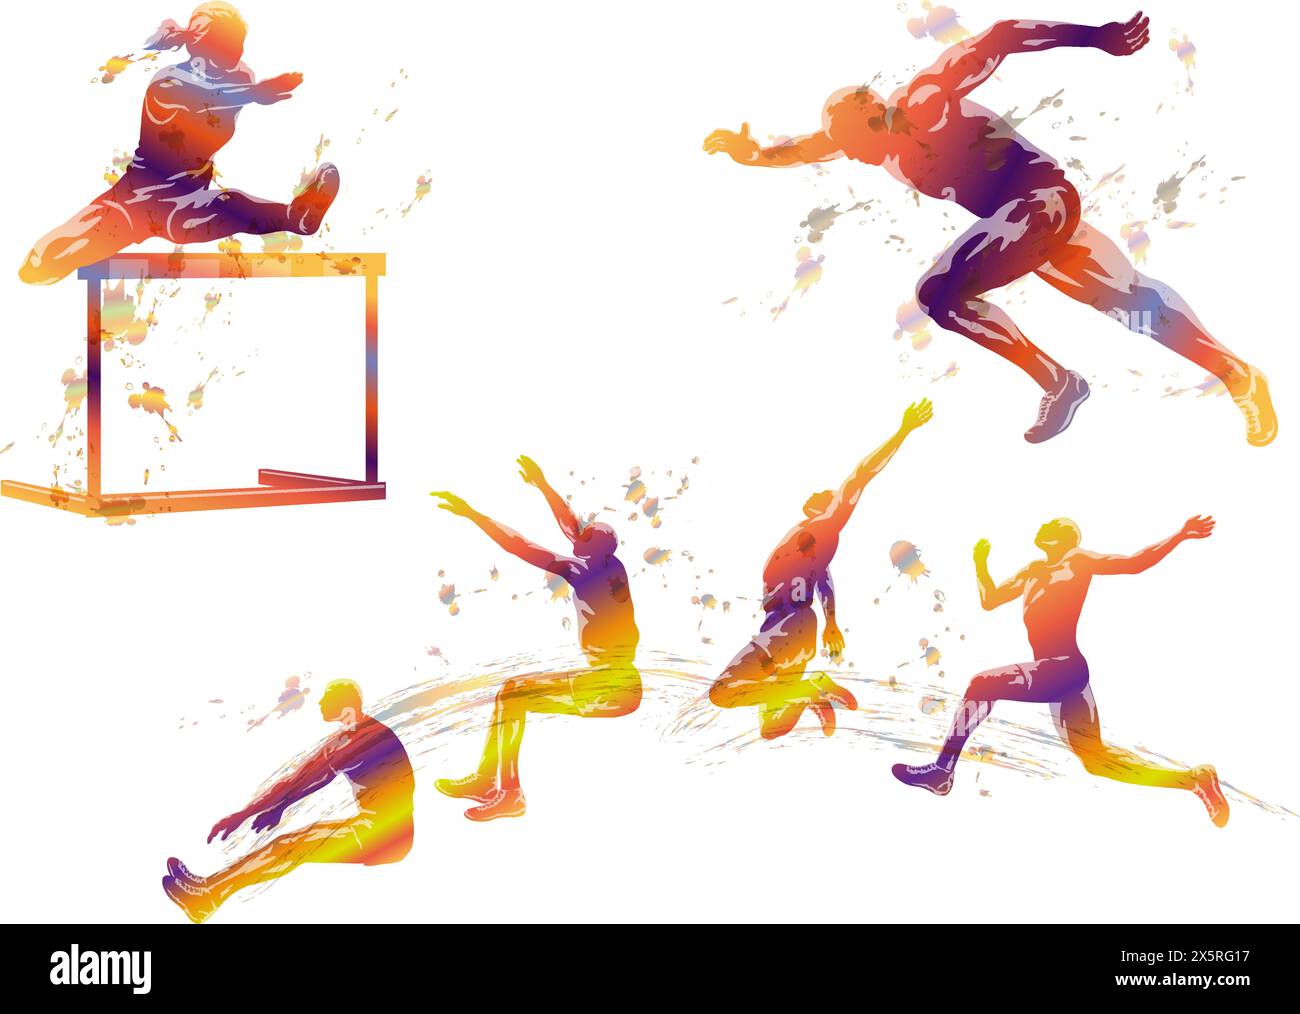 Illustrazione della silhouette di Vector Track and Field Athletes isolata su sfondo bianco. Illustrazione Vettoriale